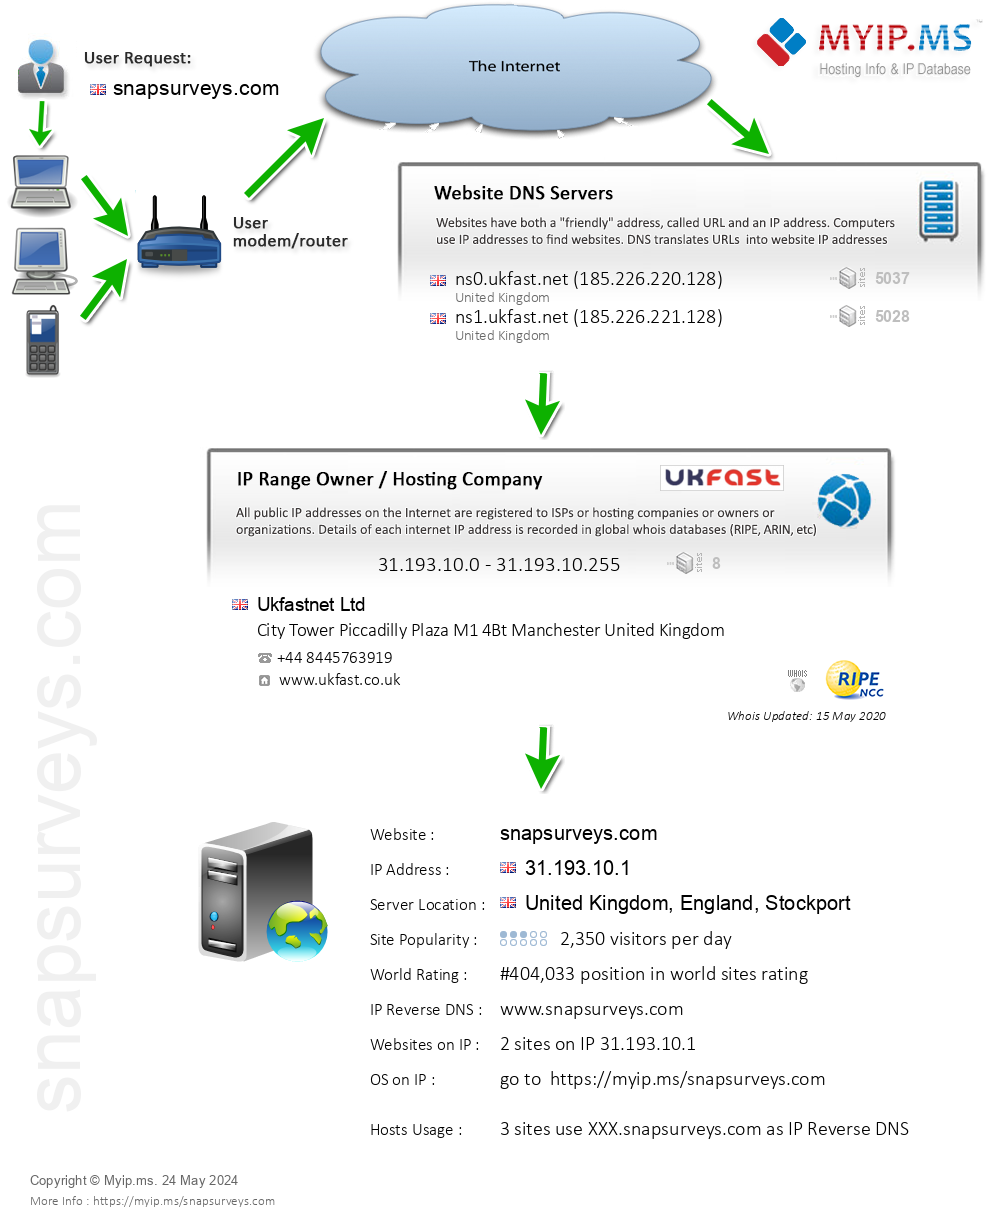 Snapsurveys.com - Website Hosting Visual IP Diagram